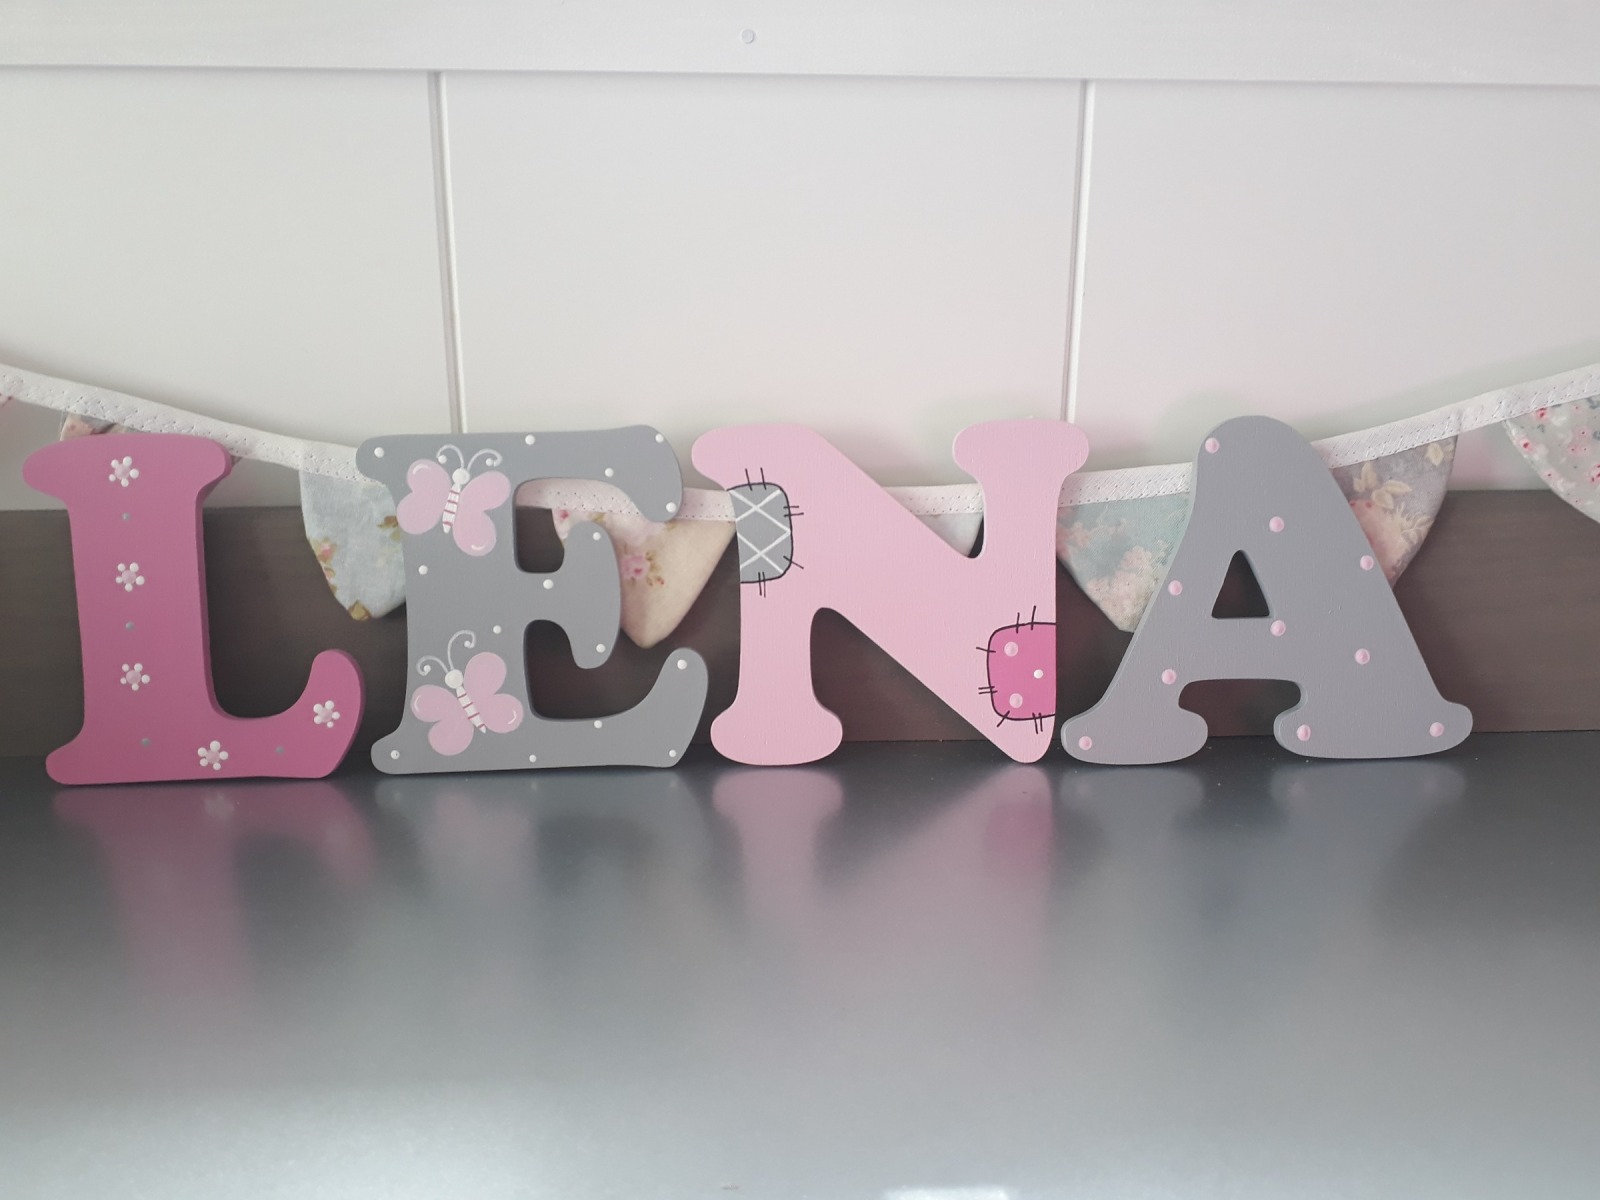 10 cm Holzbuchstaben Kinderzimmer personalisiert in grau, pink und babyrosa